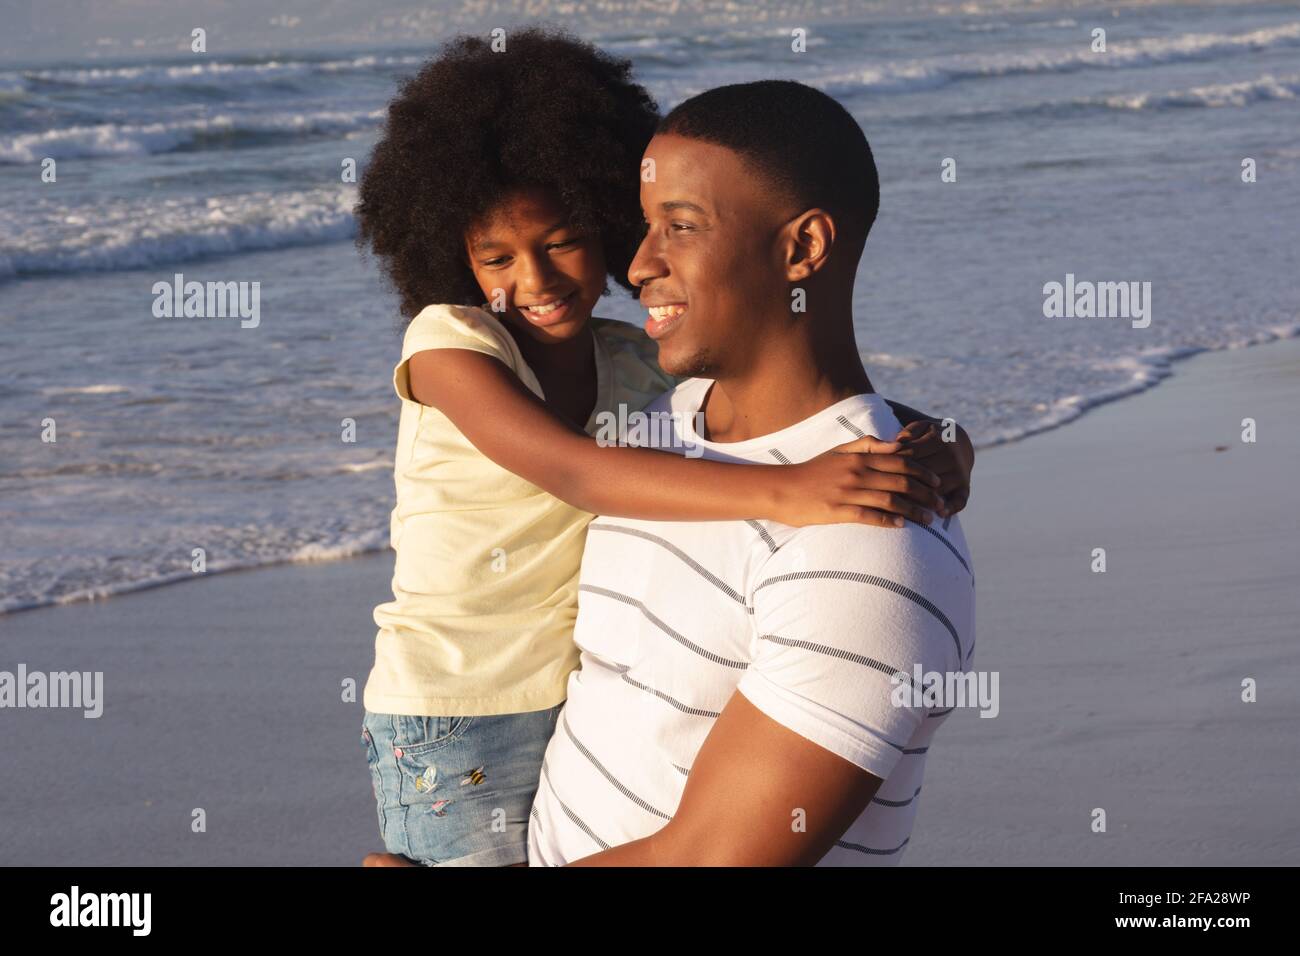 Père et fille afro-américains qui s'embrassent et sourient plage Banque D'Images